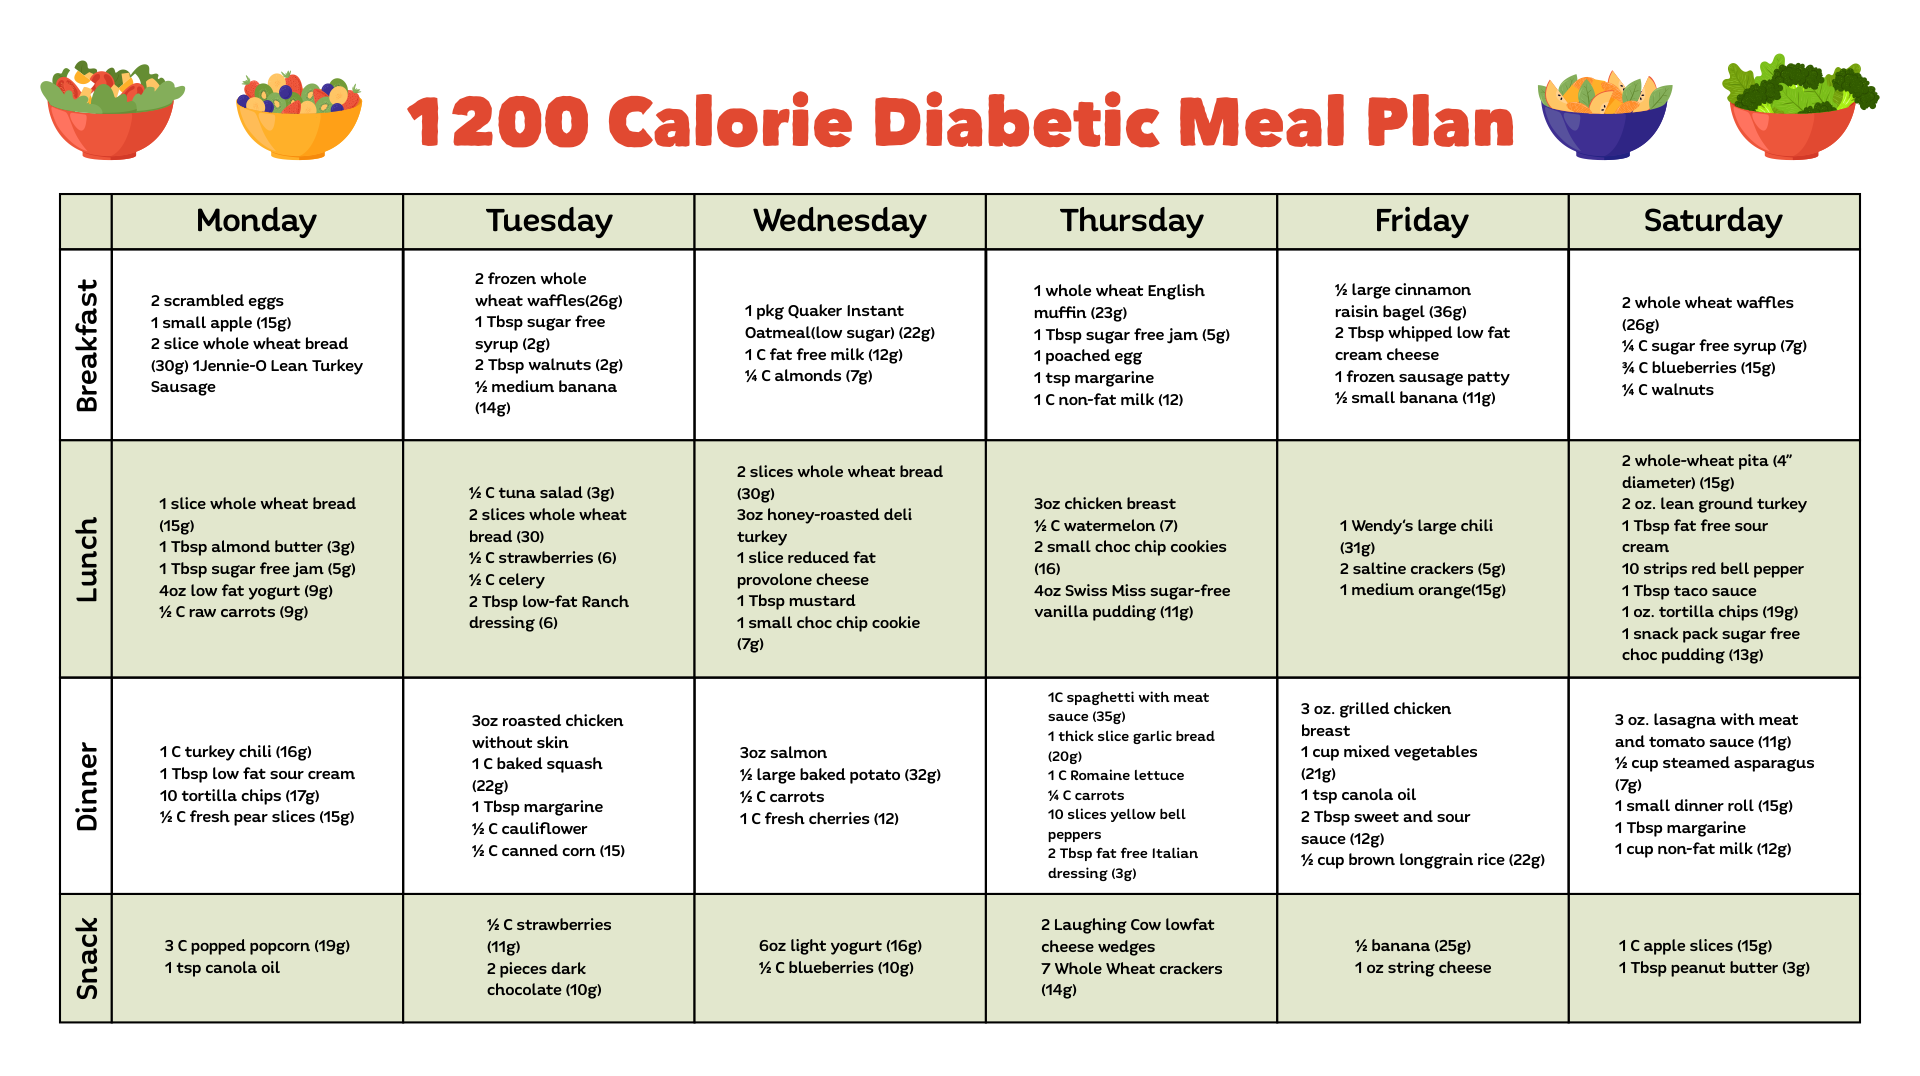 Bulletproof diet meal plan pdf